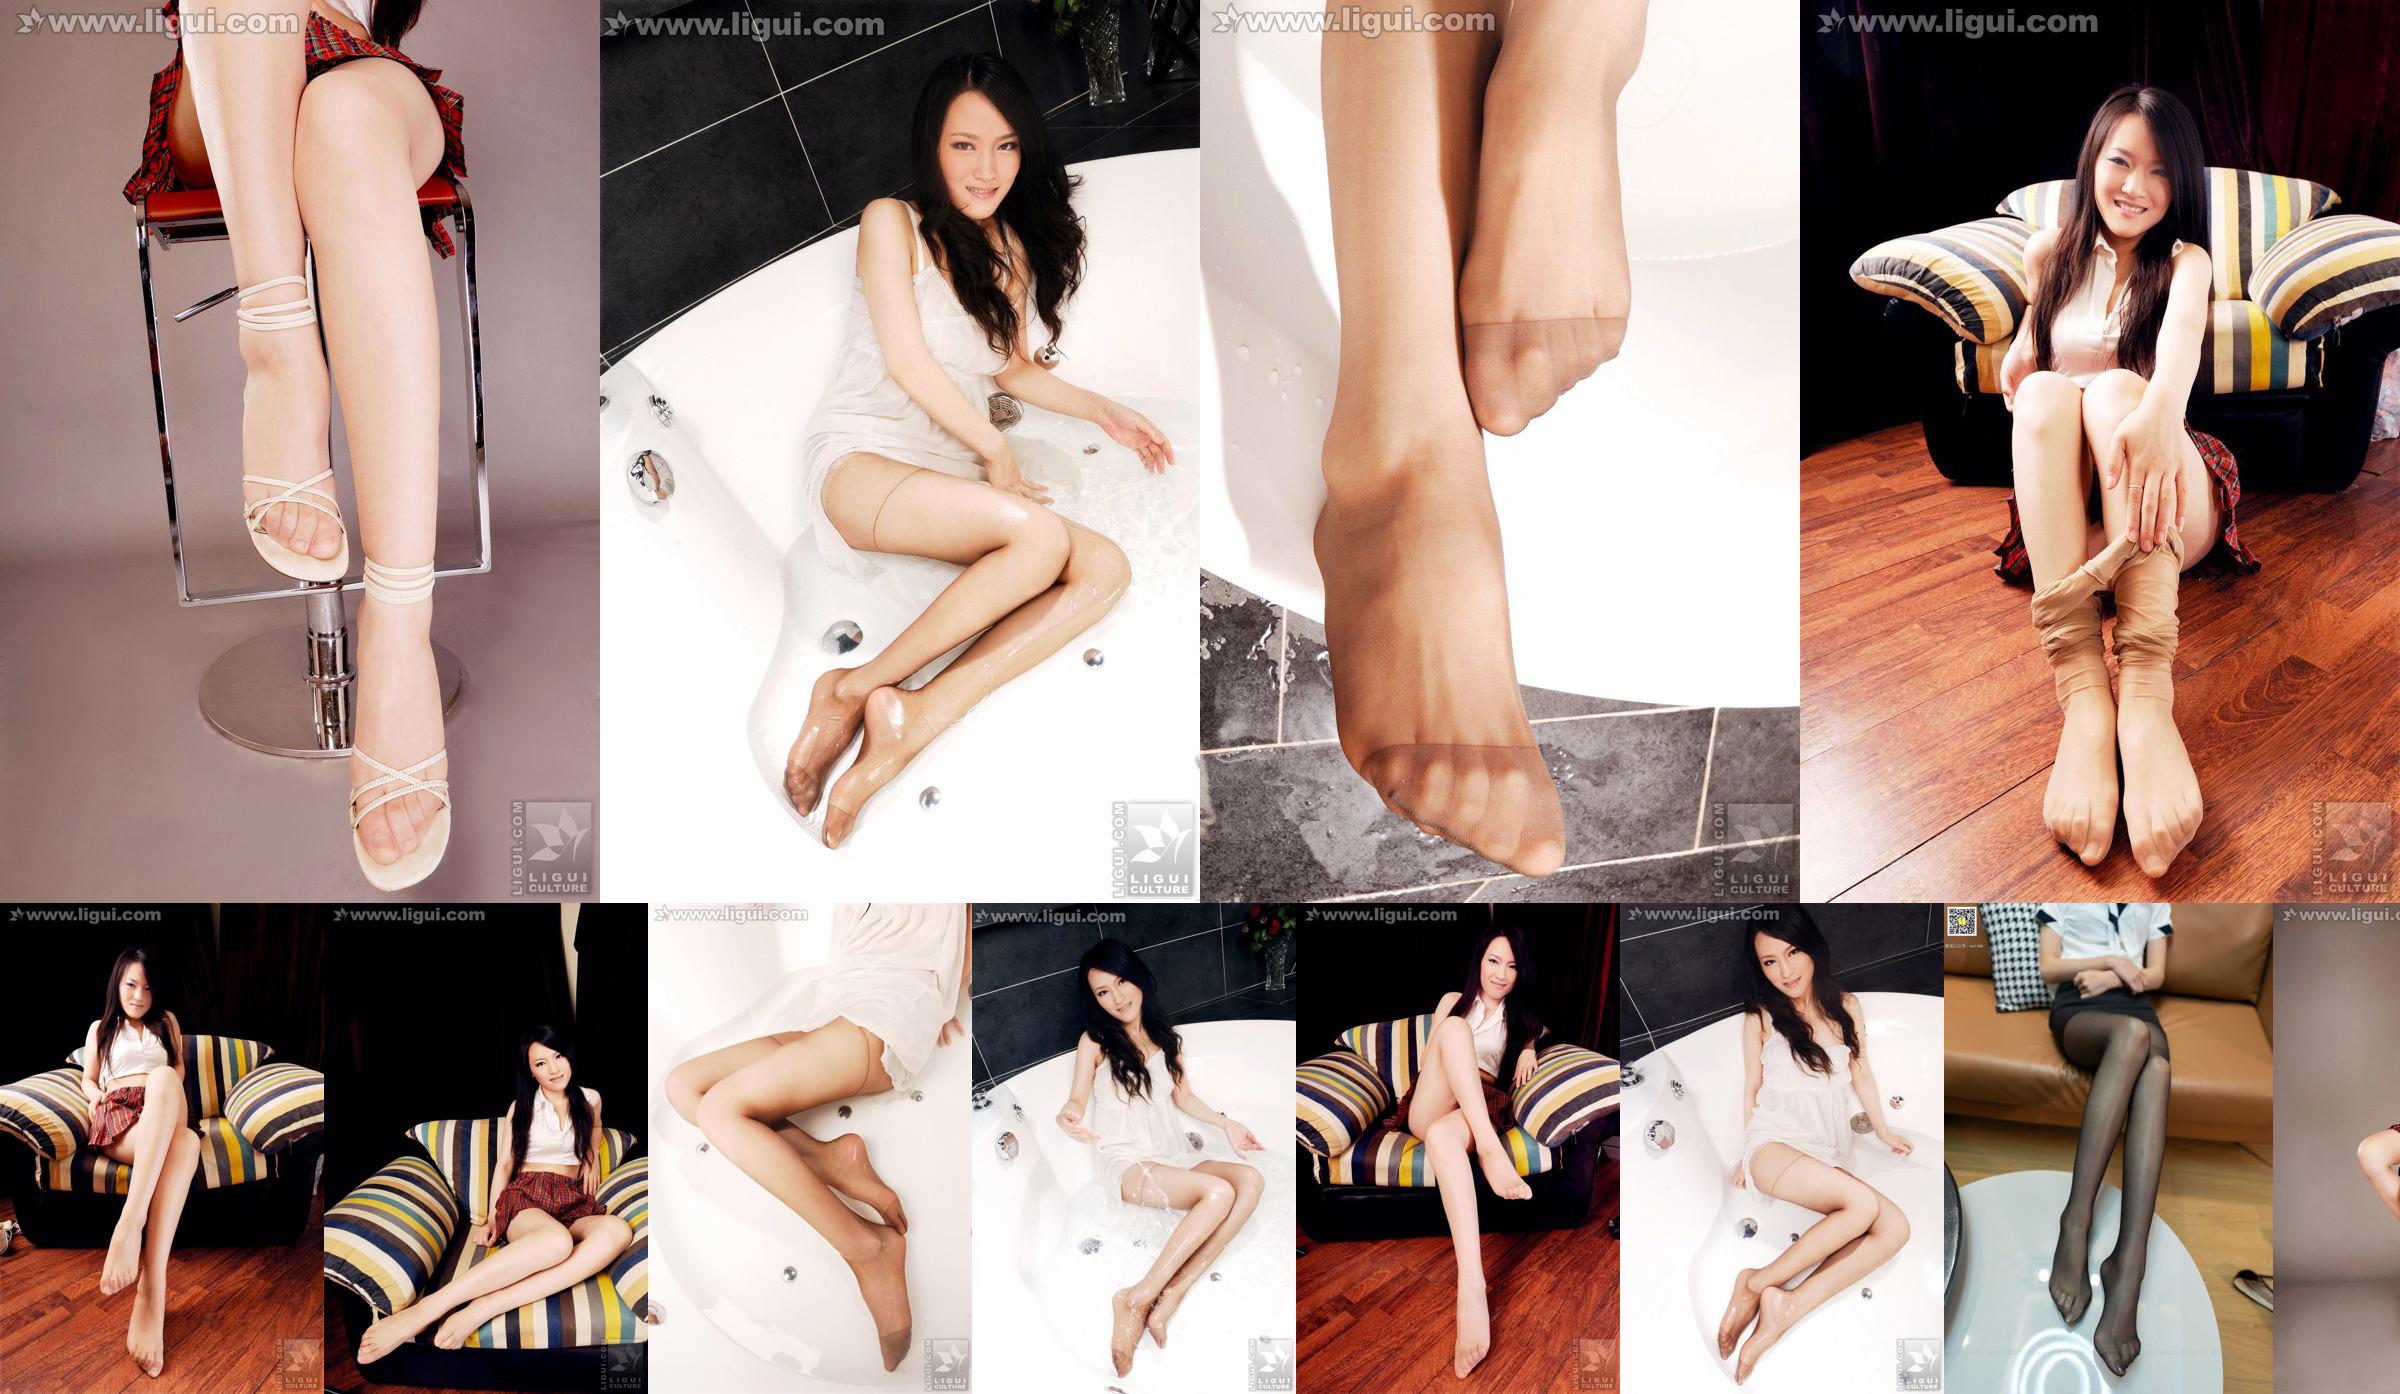 Modelo Wen Ting "Meias de carne doces e fofas com salto alto" [丽 柜 LiGui] Foto de belas pernas e pés de jade No.1659bd Página 2